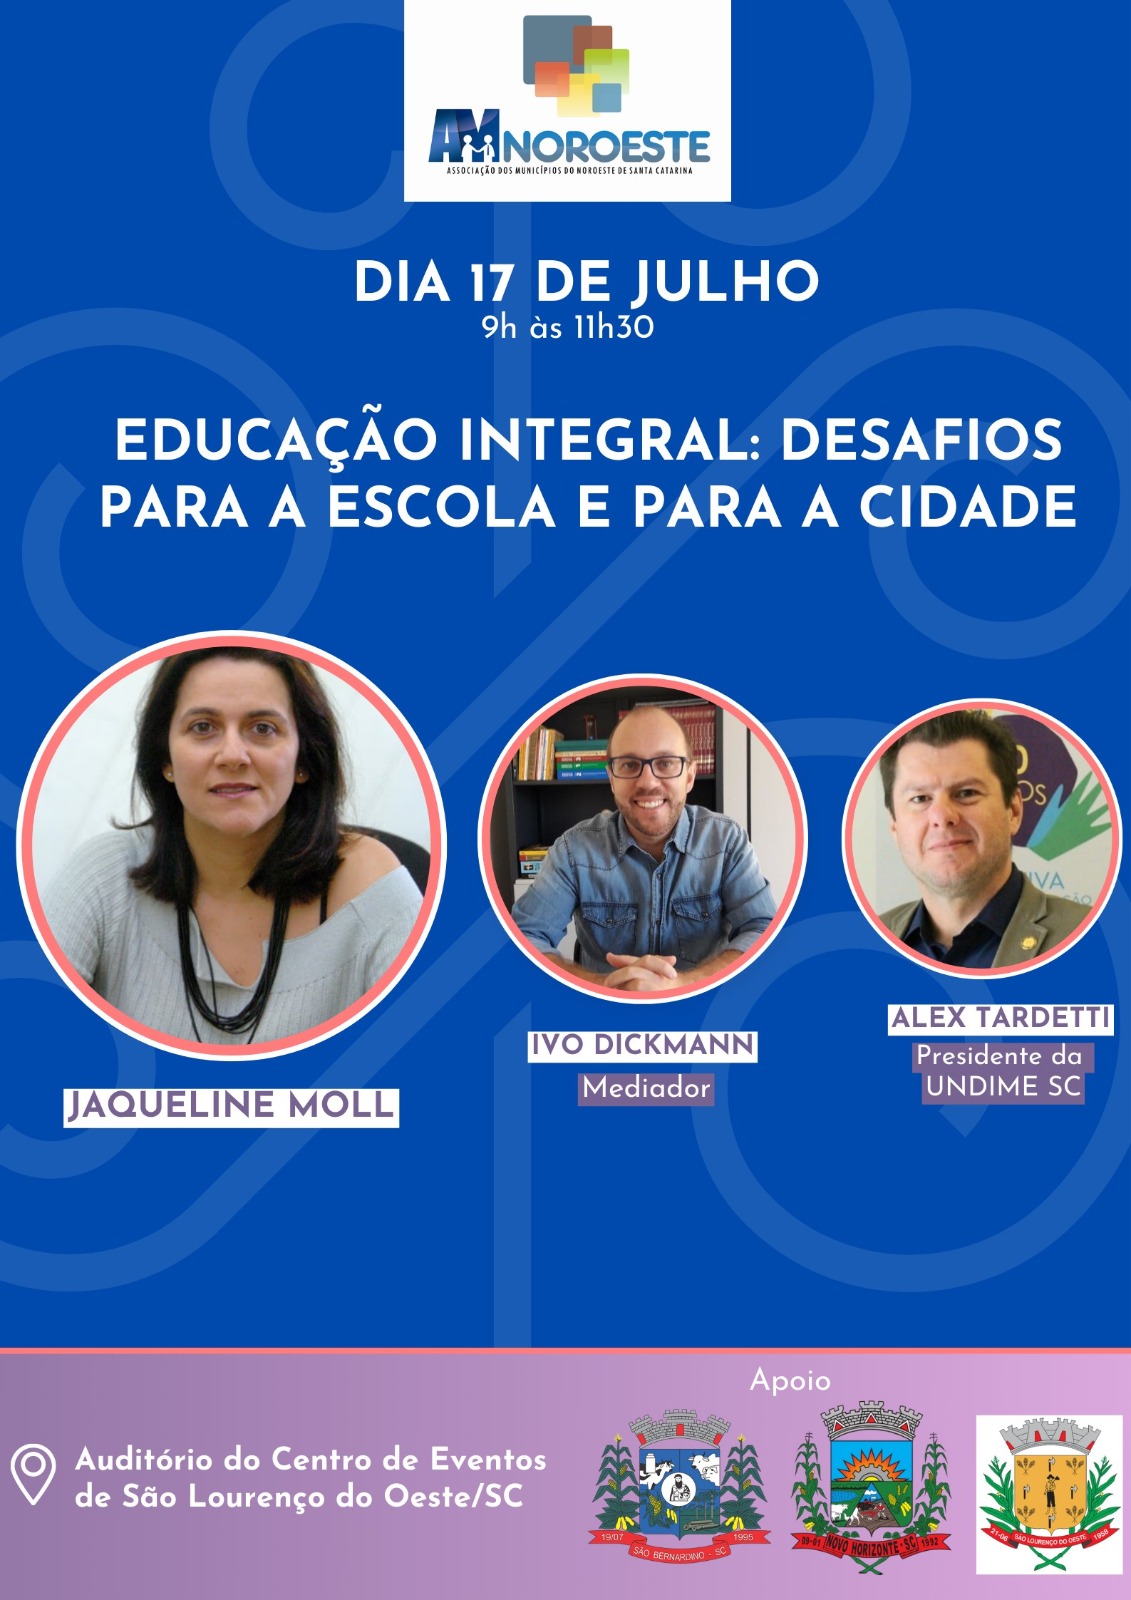 You are currently viewing EDUCAÇÃO INTEGRAL: Desafios para a Escola e para a cidade.